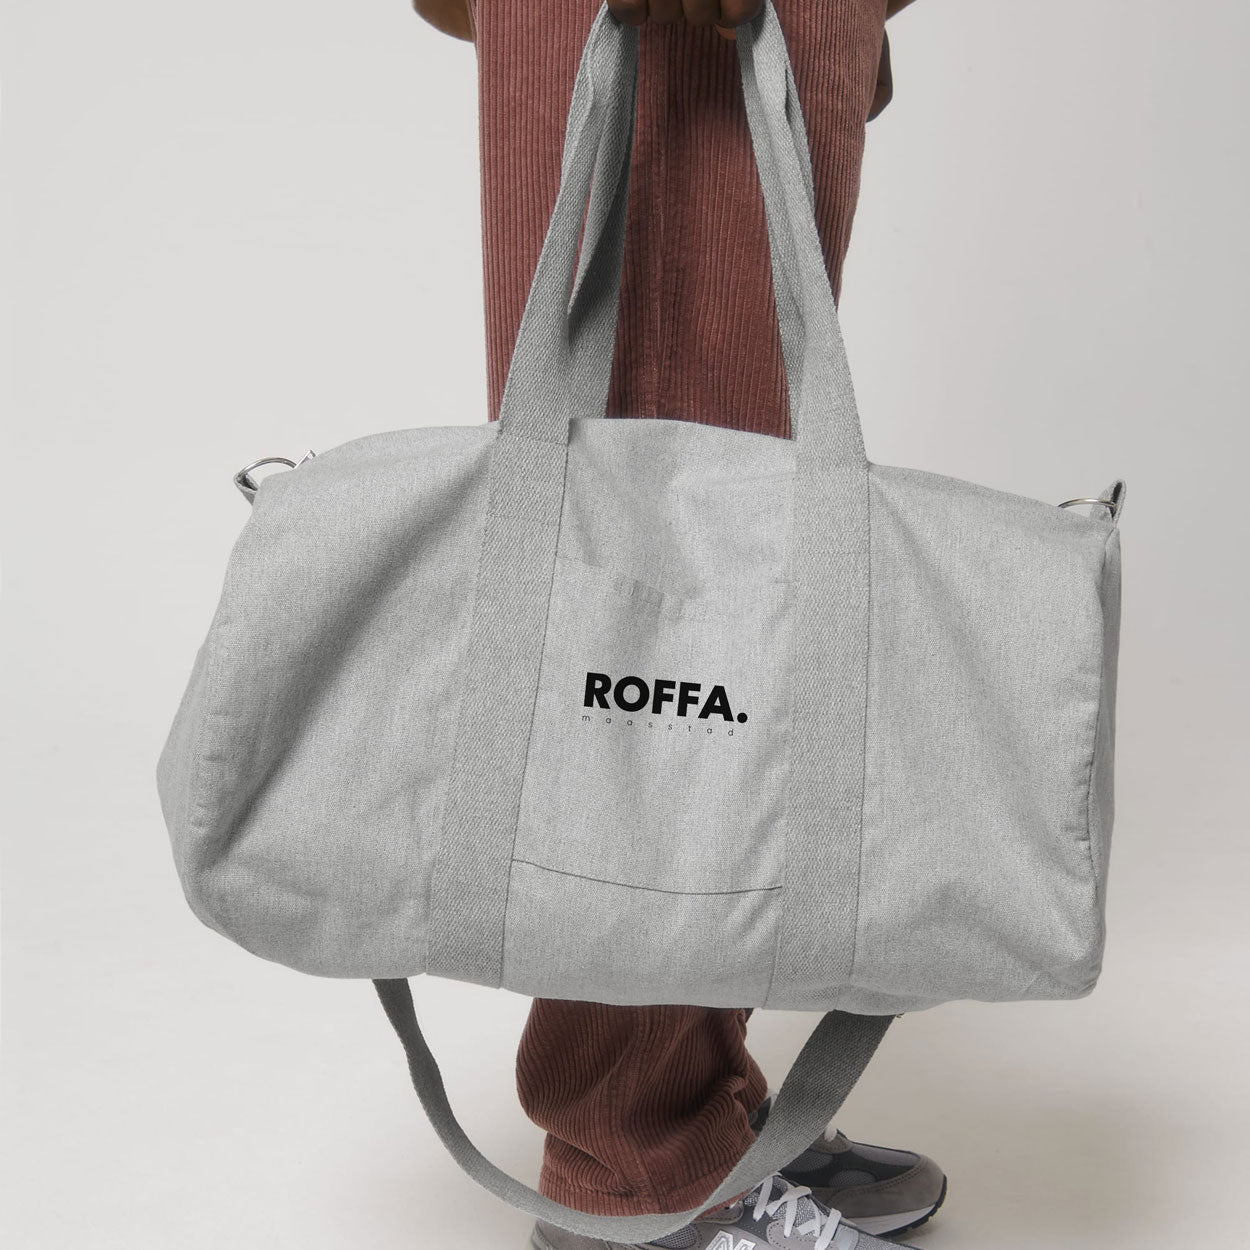 Grijze weekend tas met groot ROFFA. rotterdam logo